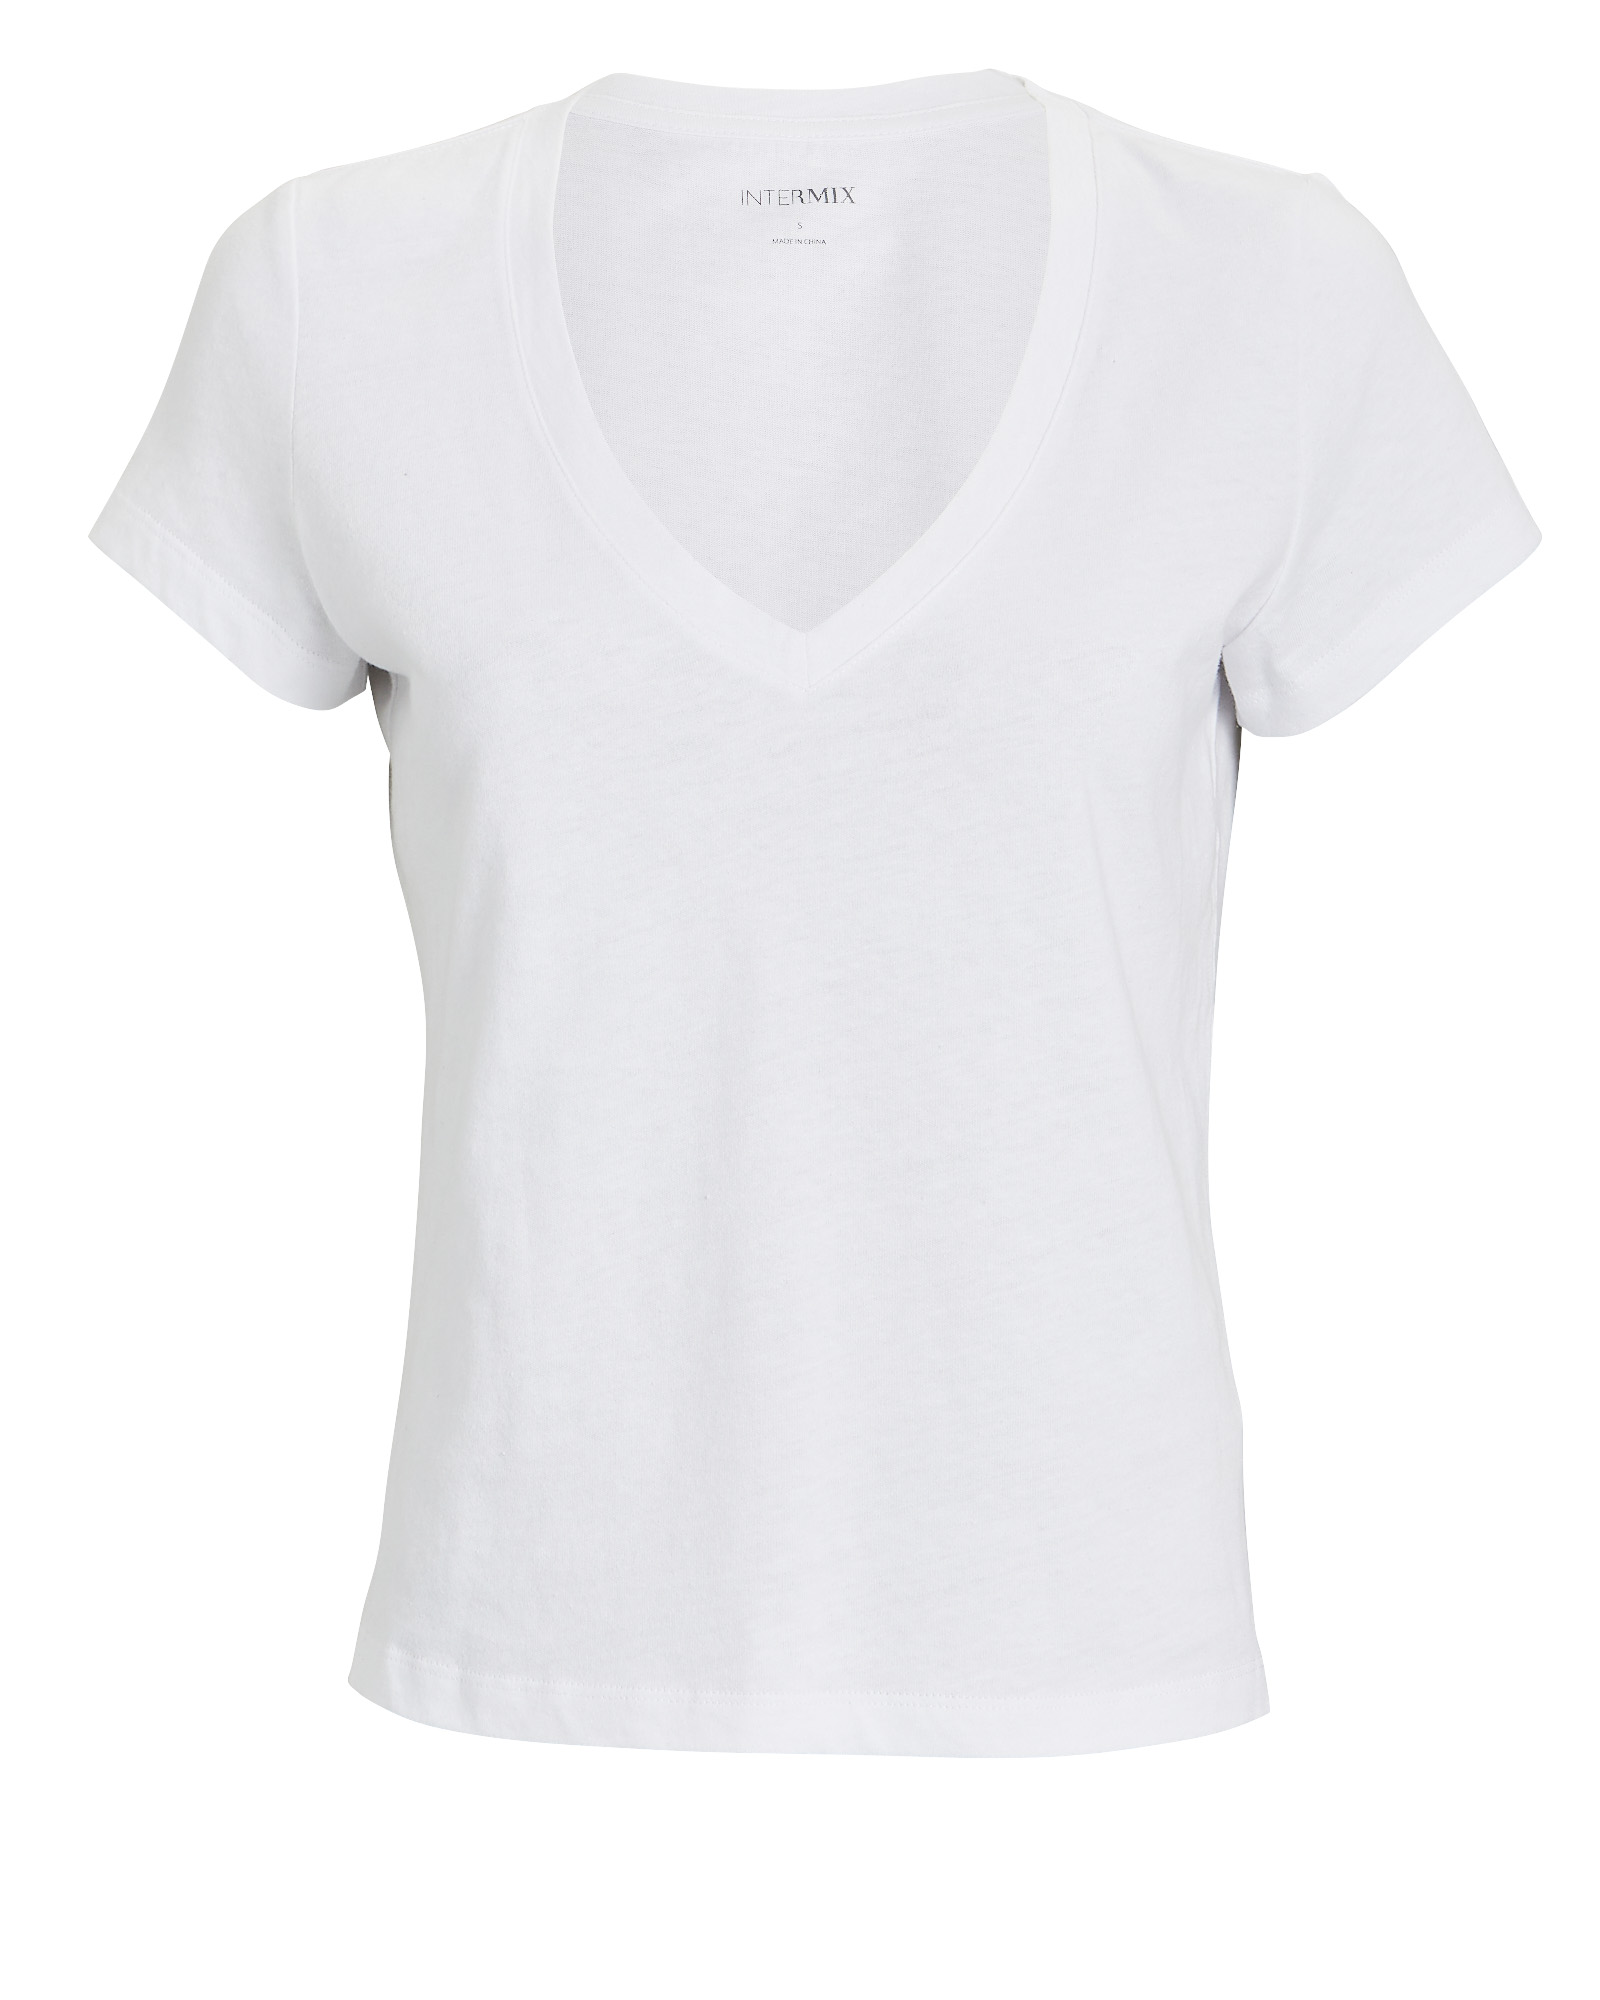 Intermix Classic White V-Neck T-Shirt | INTERMIX®